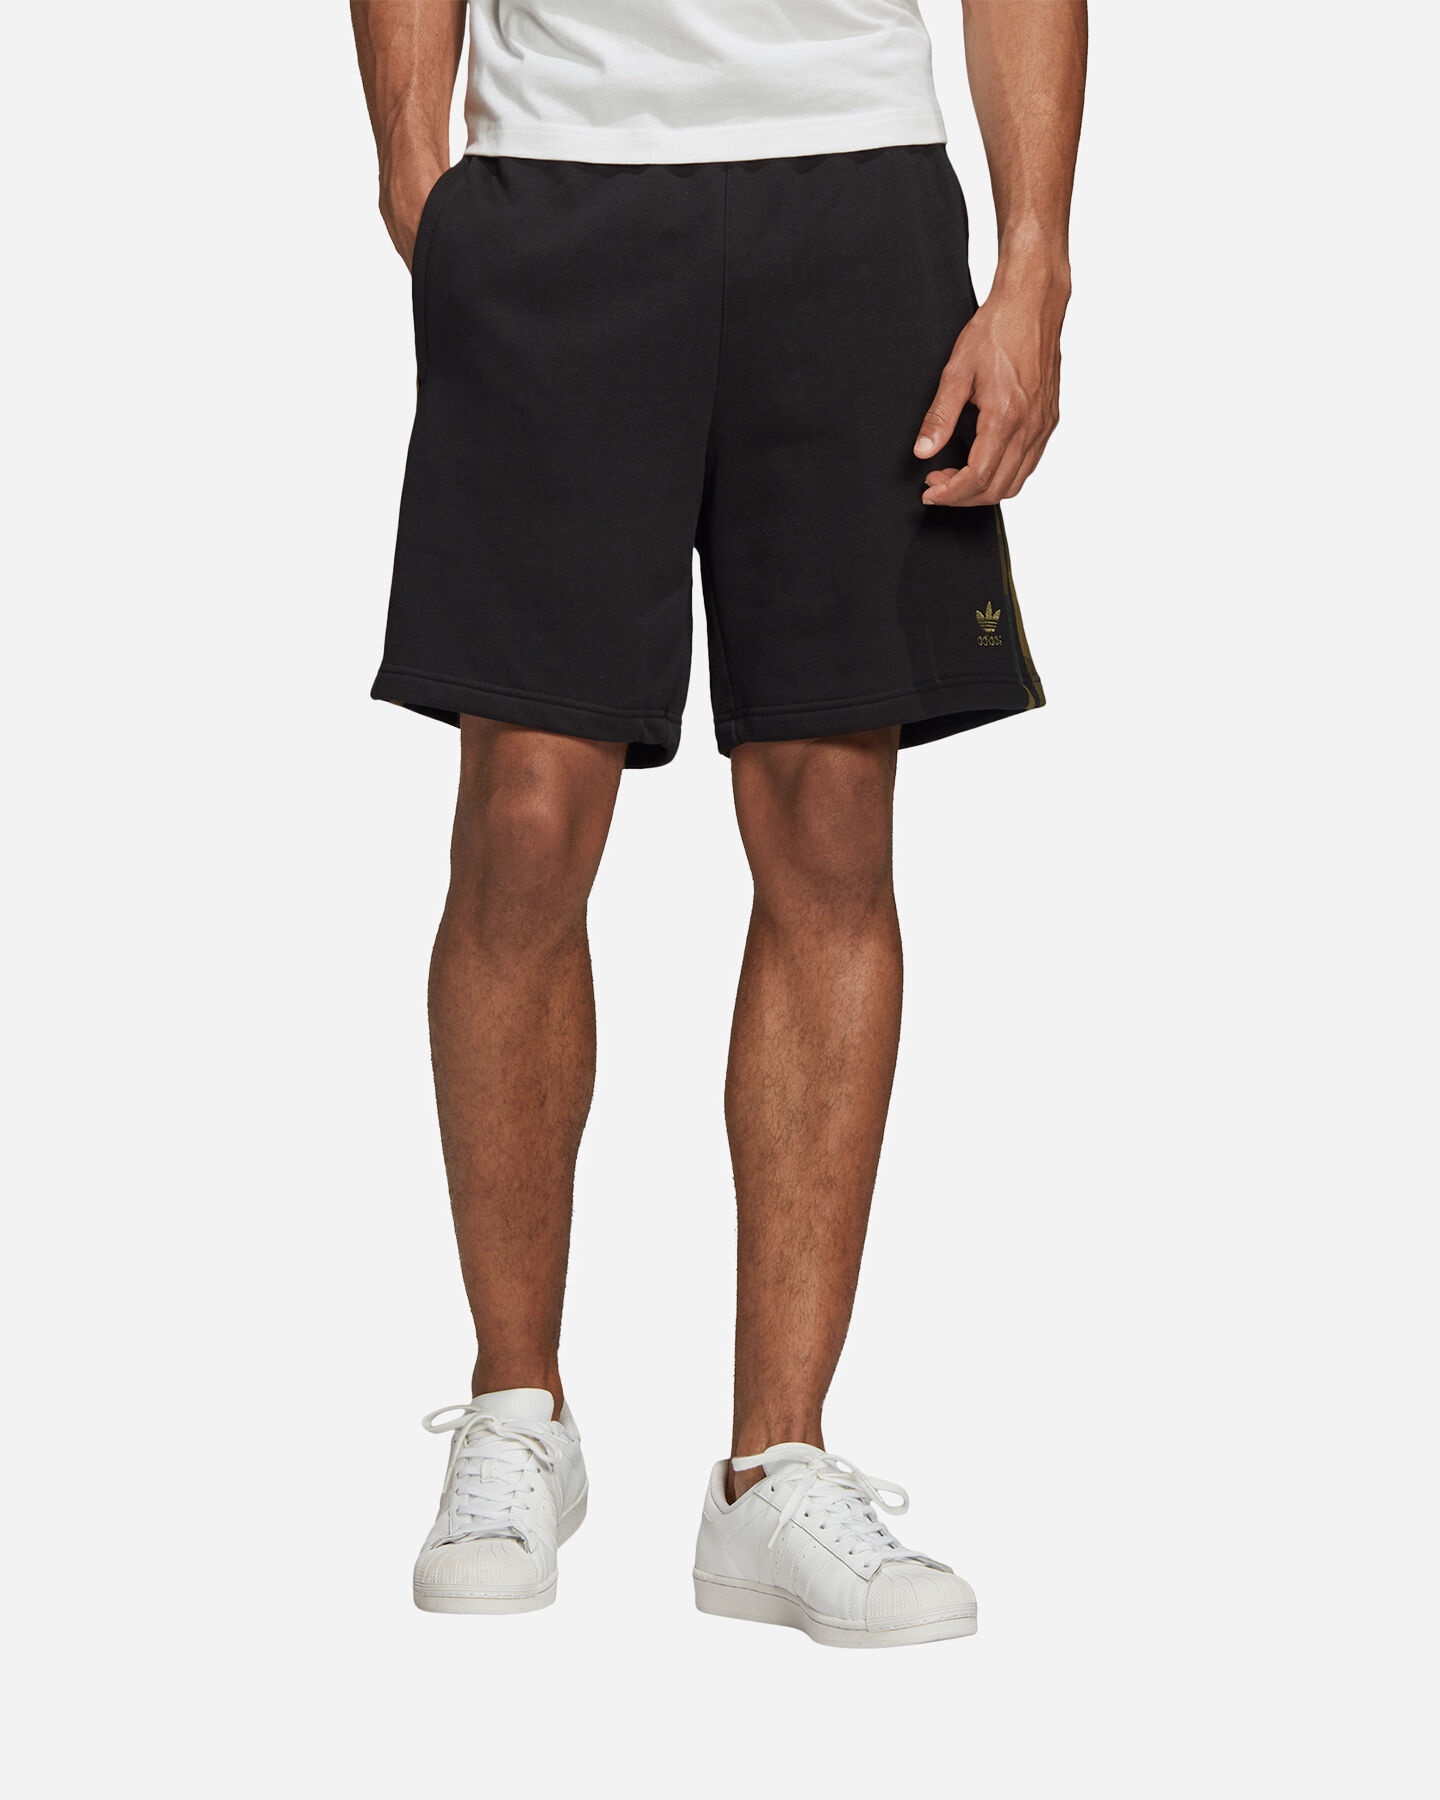 Скрытые шорты. Шорты adidas 3-Stripes Camouflage shorts. Шорты adidas Originals 3s Cargo short. Шорты адидас черные мужские 1 полоса. Шорты мужские adidas Camo.